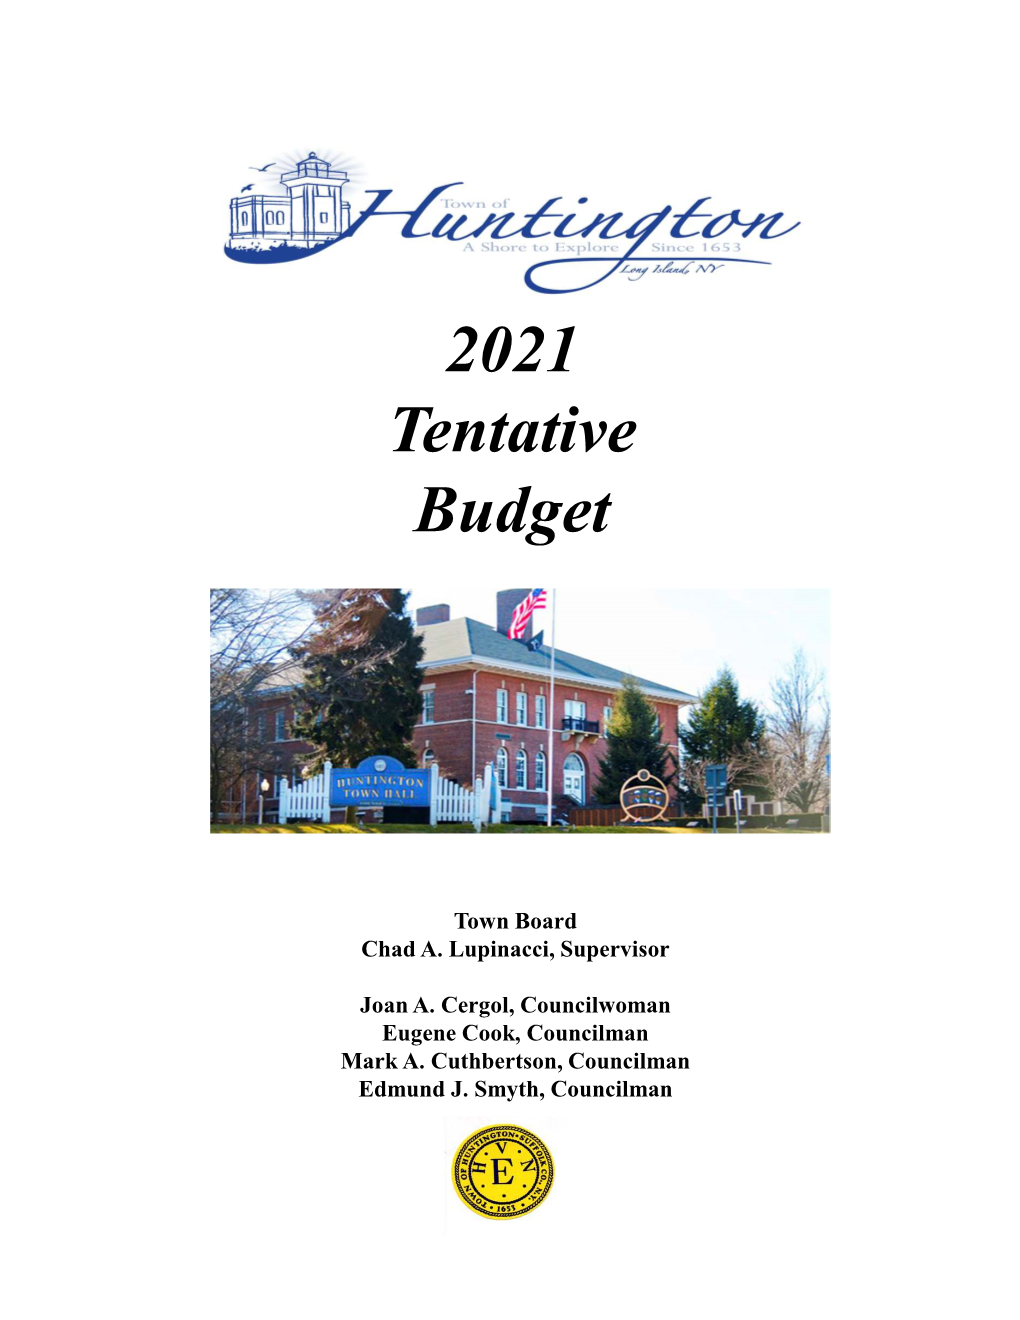 Supervisor's Tentative Budget for 2021